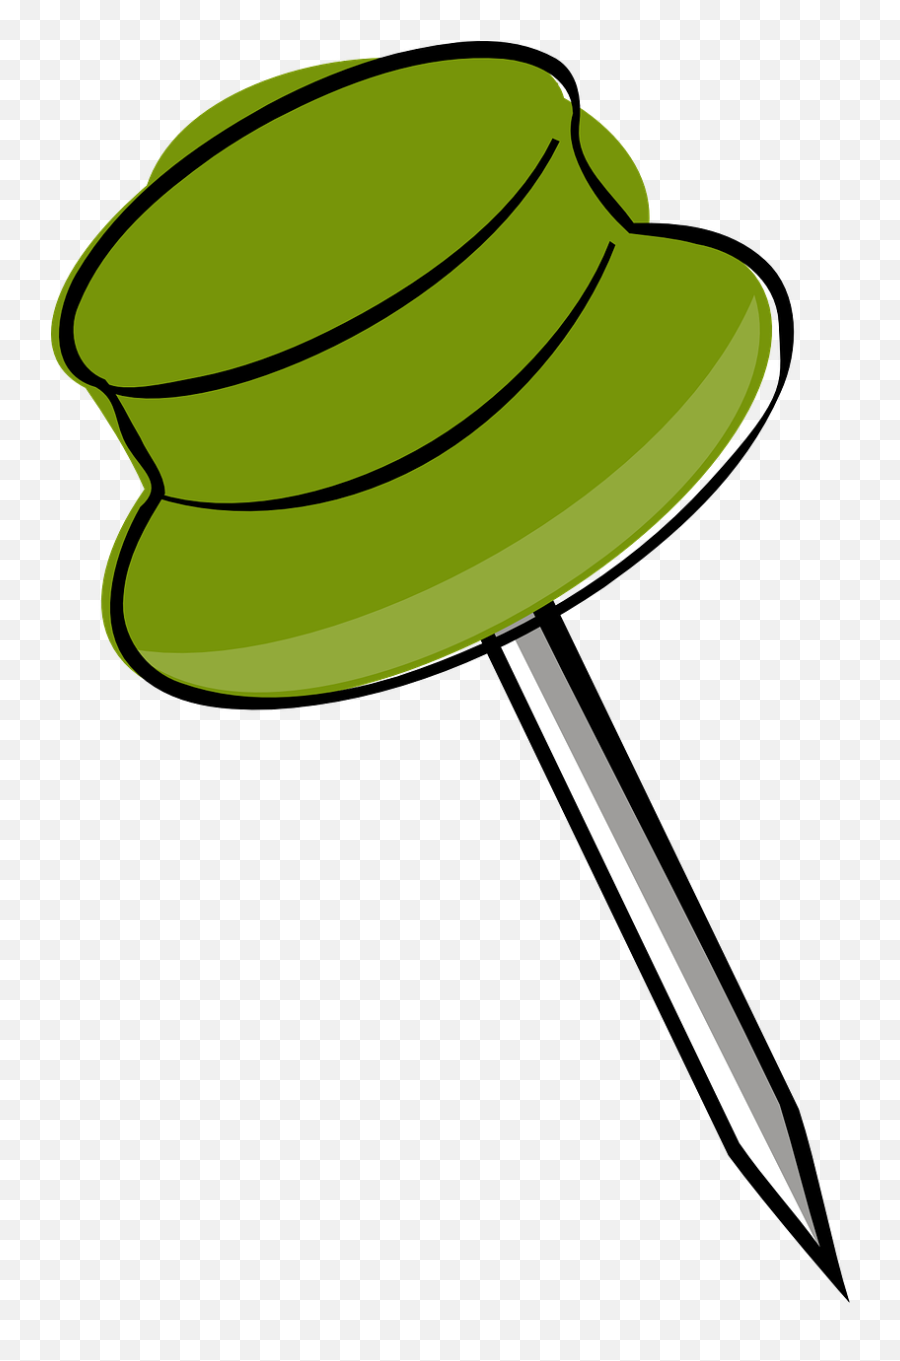 Drawing - Pinpushpinpush Pintagthumbtack Free Image From Tiny Push Pin Right Png Emoji,Push Pin And Needle Emoji